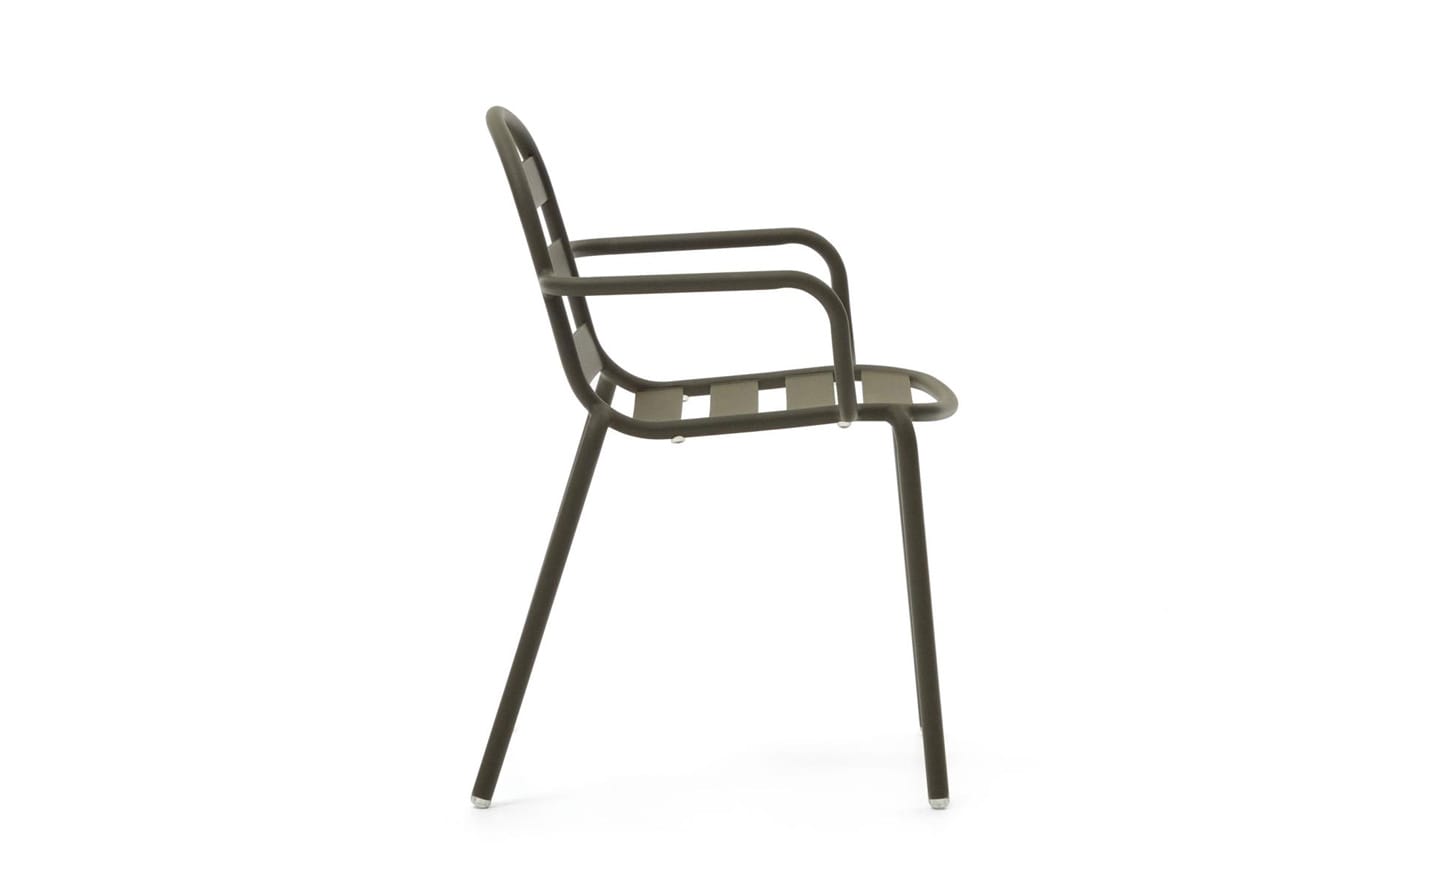 Cadeira de Exterior Joncols Alumínio Verde com design exclusivo inspirado em seixos - J0600004NN19 | Moveistore